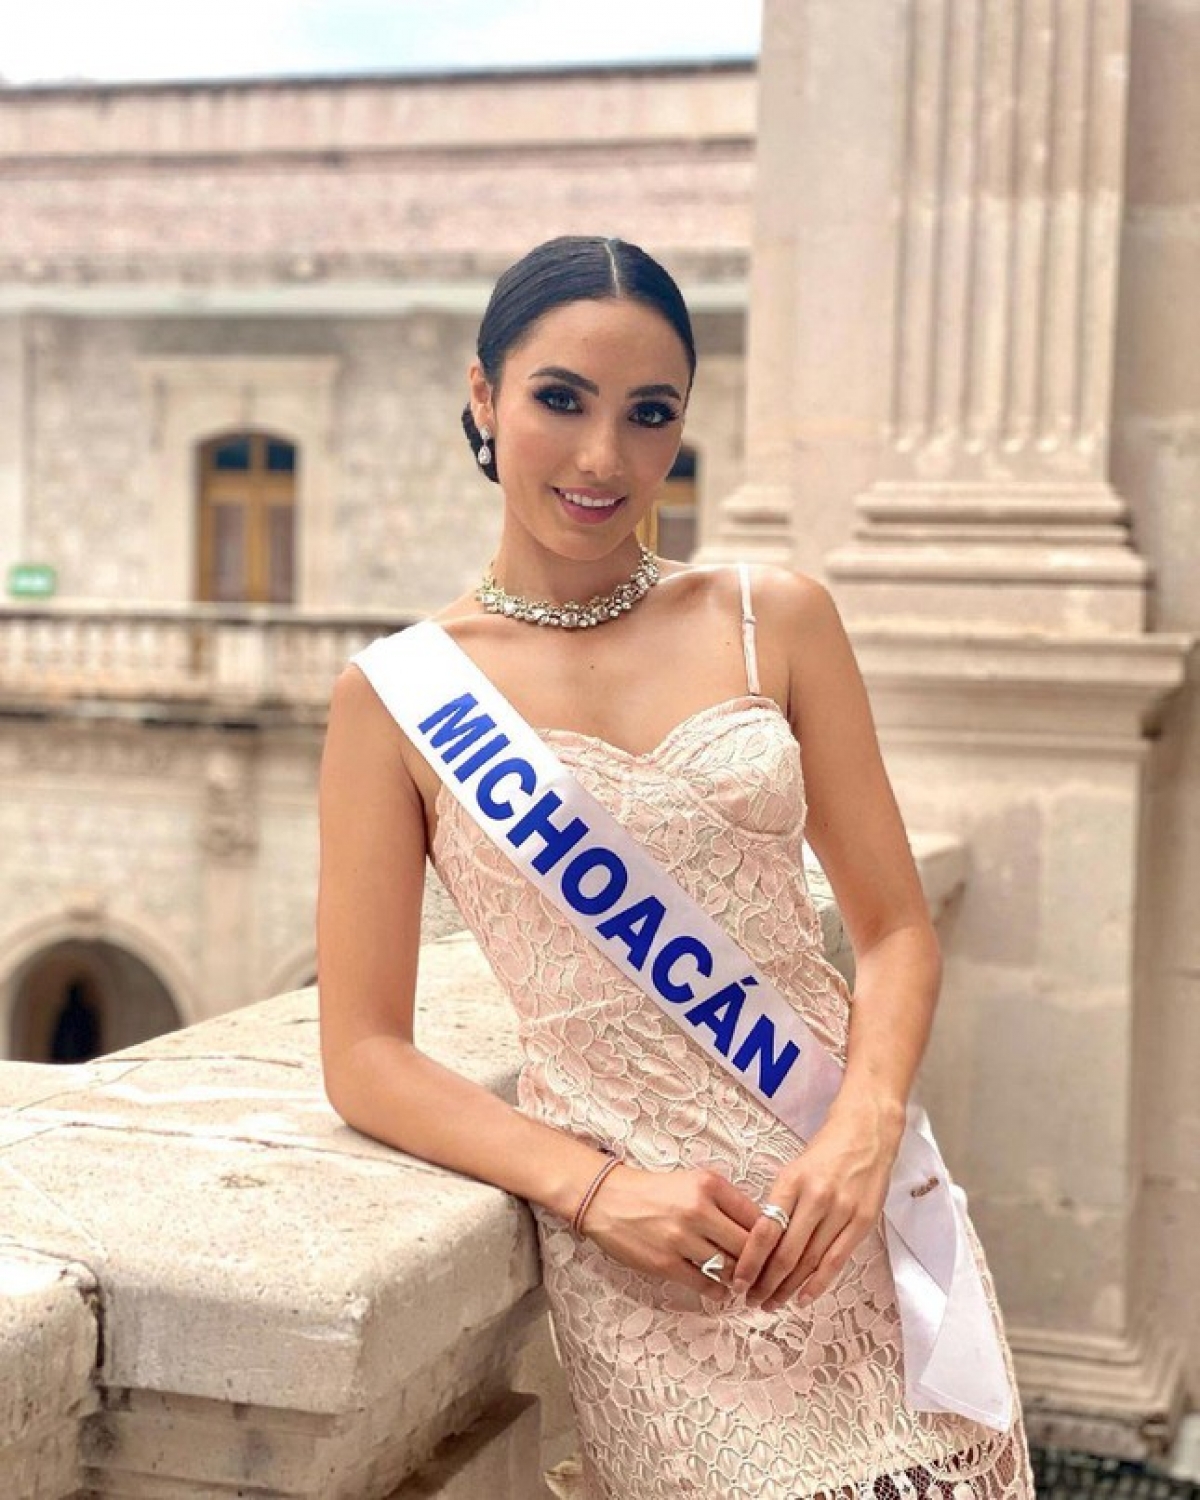 Nhan sắc ngọt ngào của Hoa hậu Mexico - 'Đối thủ' đáng gờm của Đỗ Thị Hà tại Miss World - Ảnh 7.